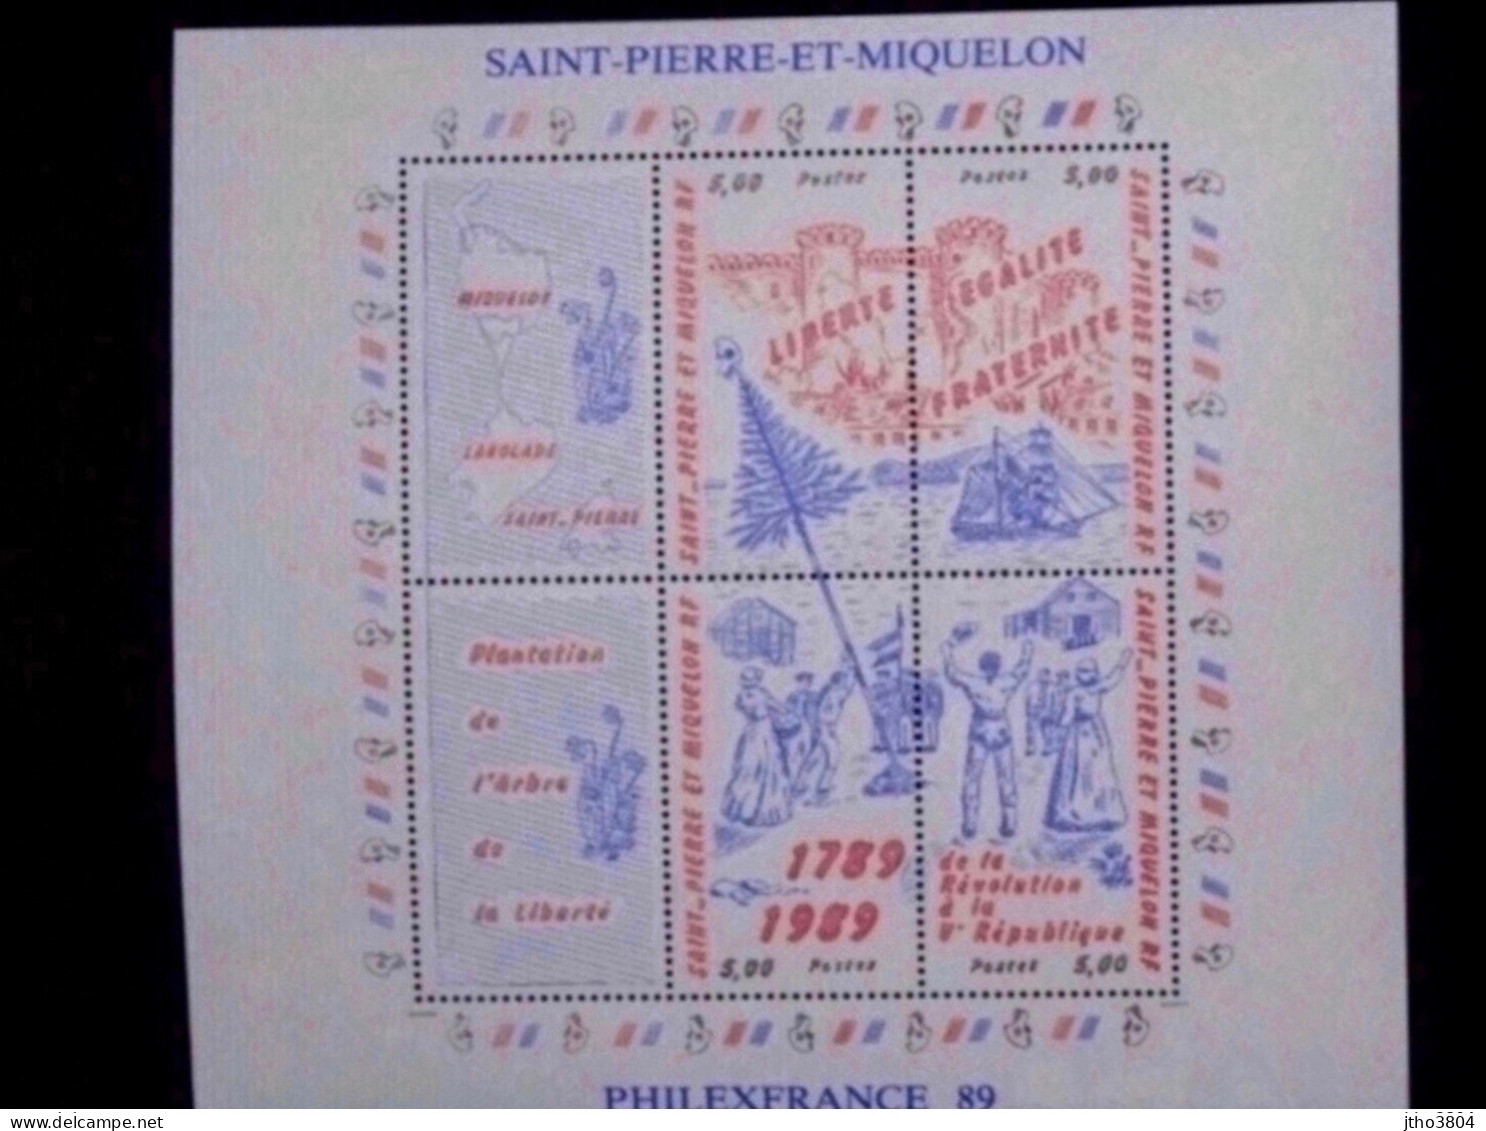 Saint Pierre Et Miquelon -Philexfrance 89 - Bloc 3 Révolution Française - BF3 - Unused Stamps